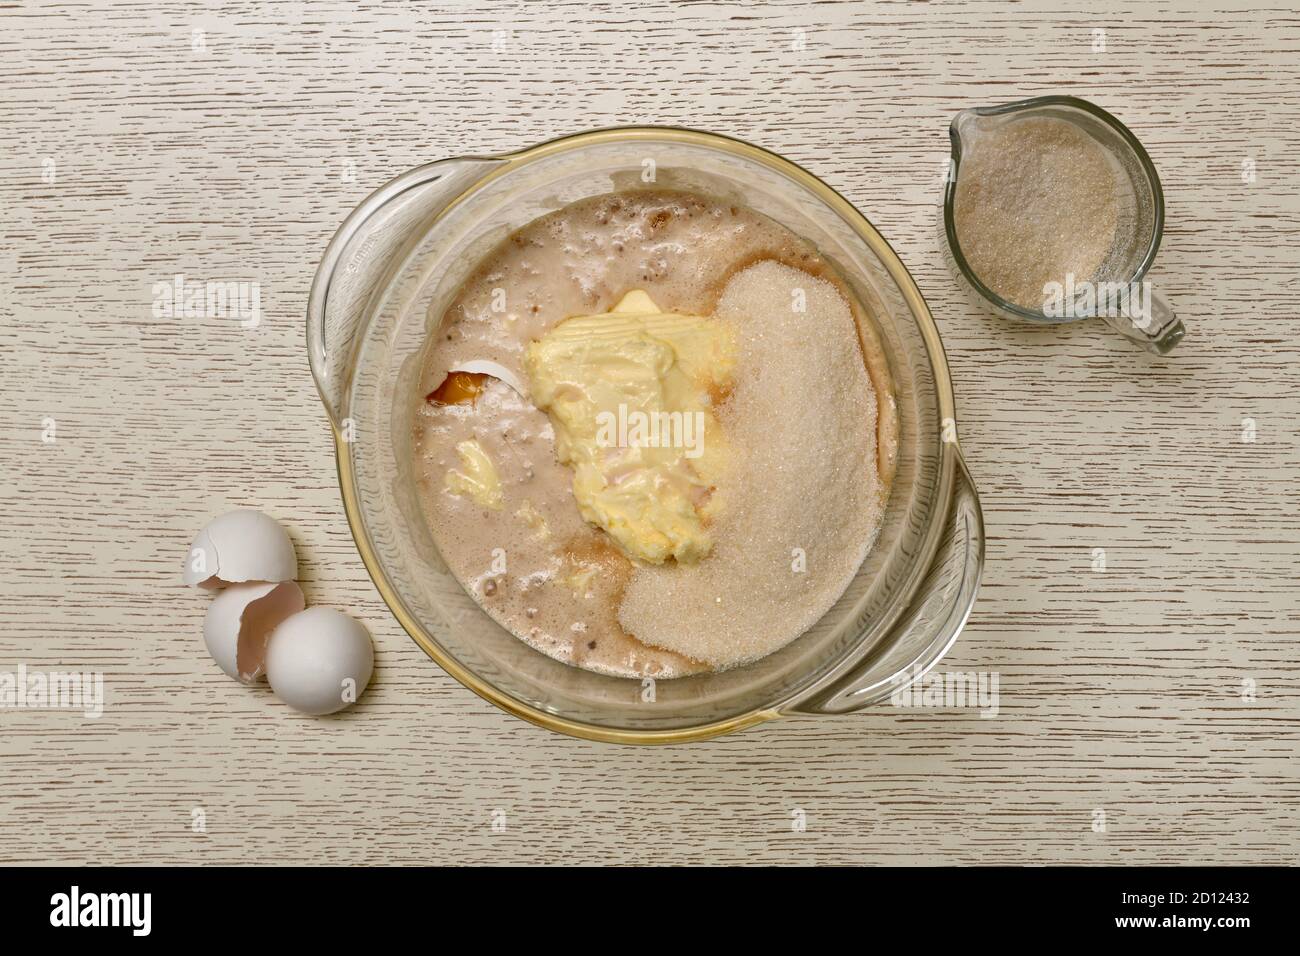 Das Stadium der Zugabe von Zucker zu einer Mischung aus Milch, Eier und Hefe, in einem Glas-Topf. Daneben ist ein Krug und eine Schale. Stockfoto